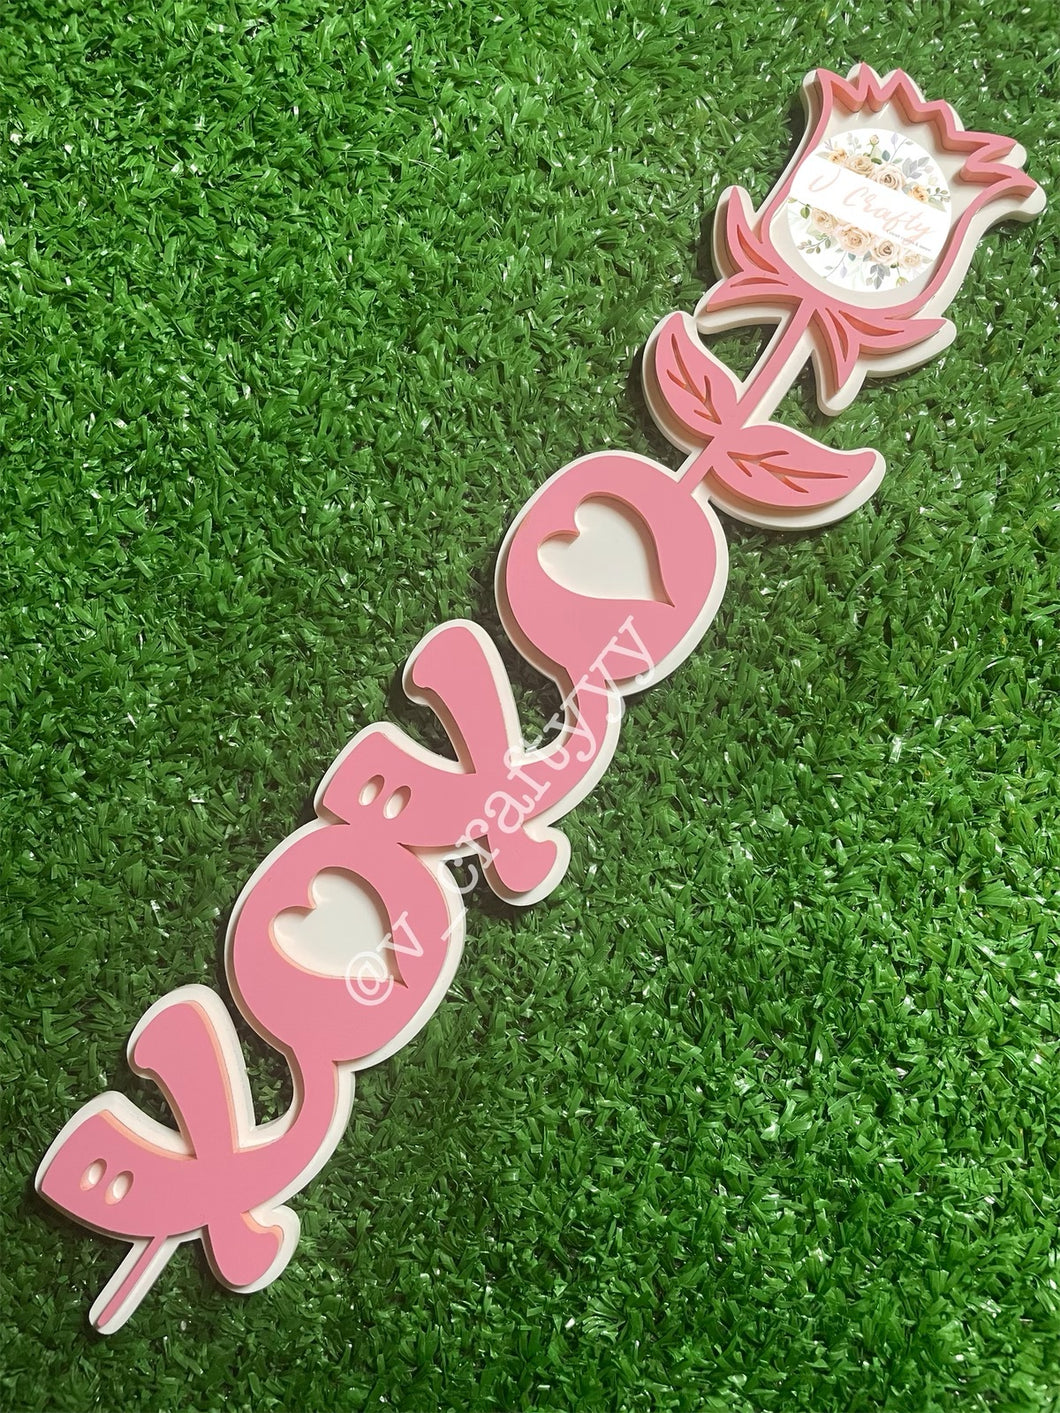 XOXO Acrylic Rose Magnet